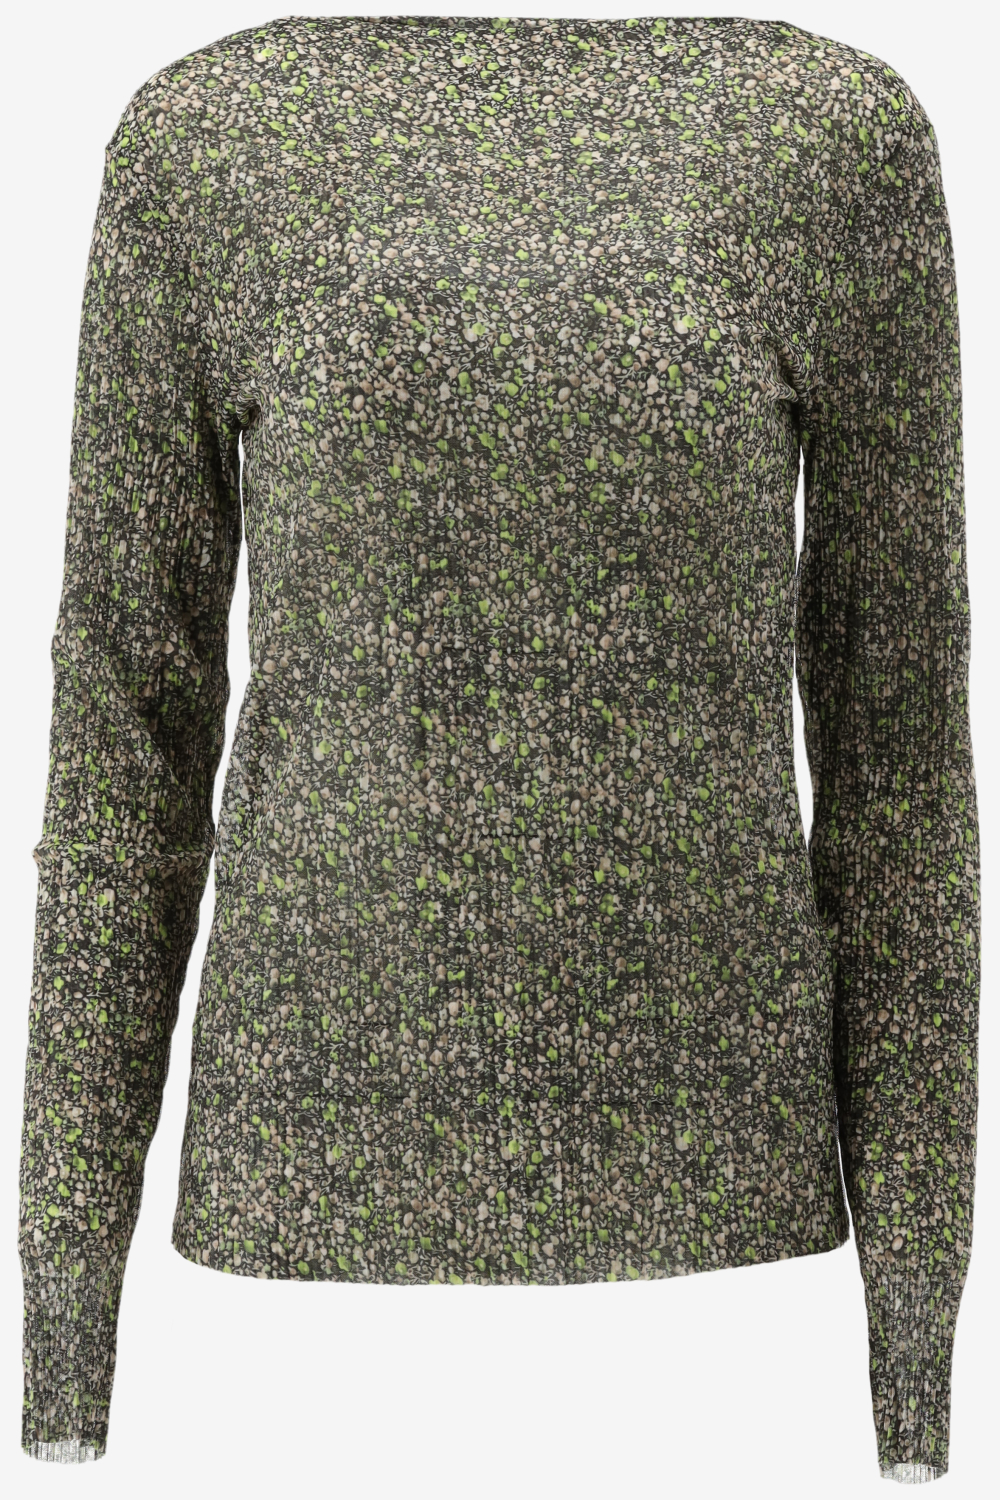 Catwalk Junkie Ls Moss Flowers Tops & T-shirts Dames - Shirt - Groen - Maat S